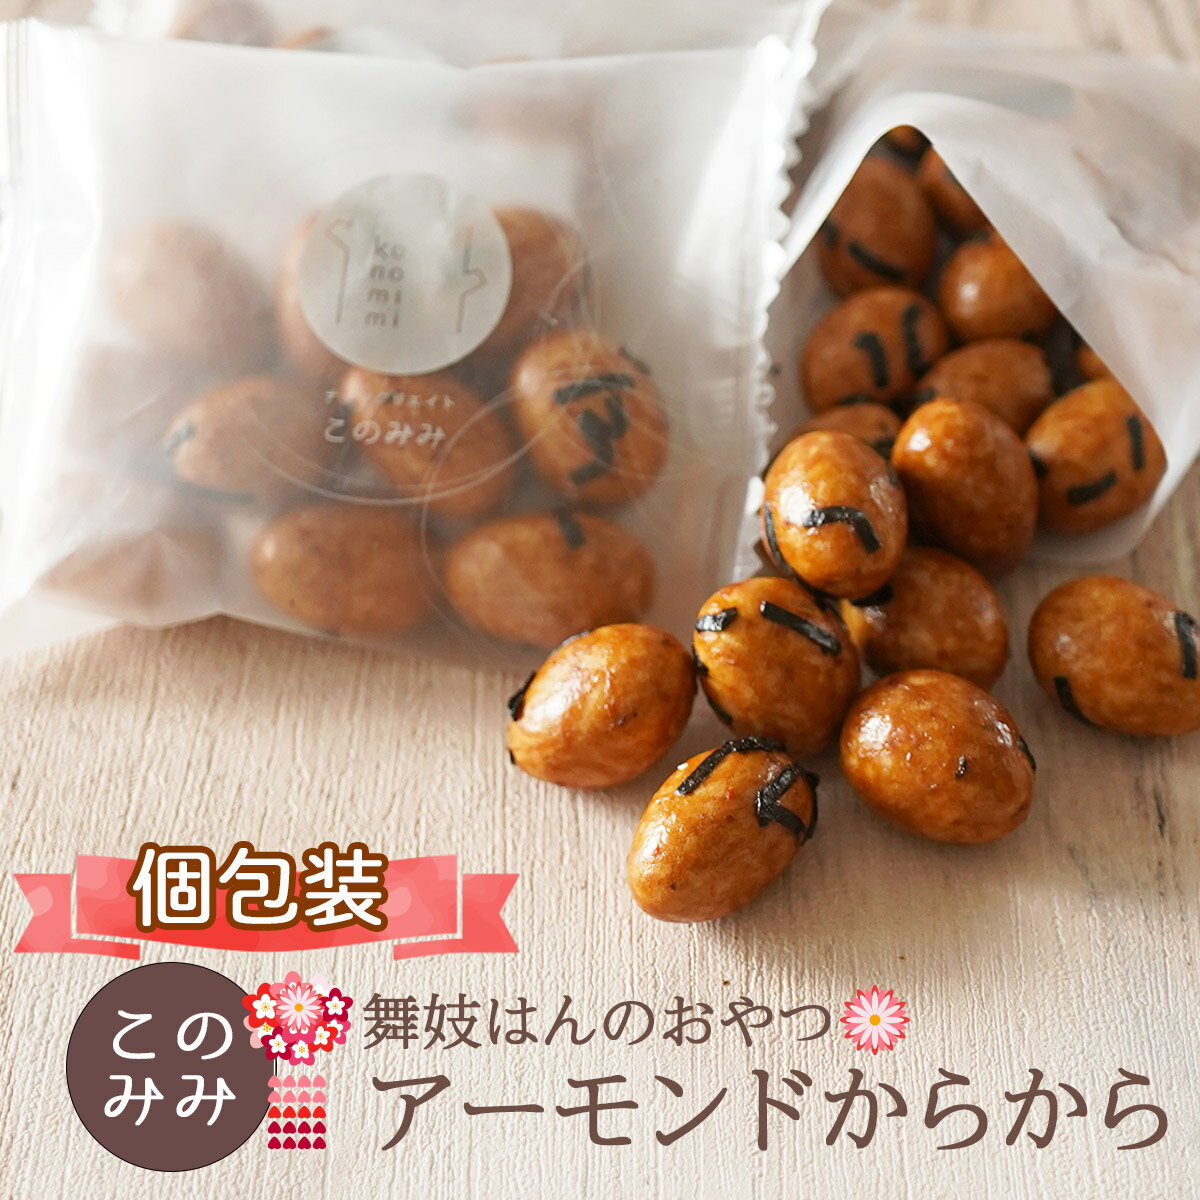 おかき せんべい ナッツ 菓子 ナッツ菓子 おつまみ 醤油味 小分け 日本製 ギフト アーモンドからから200g